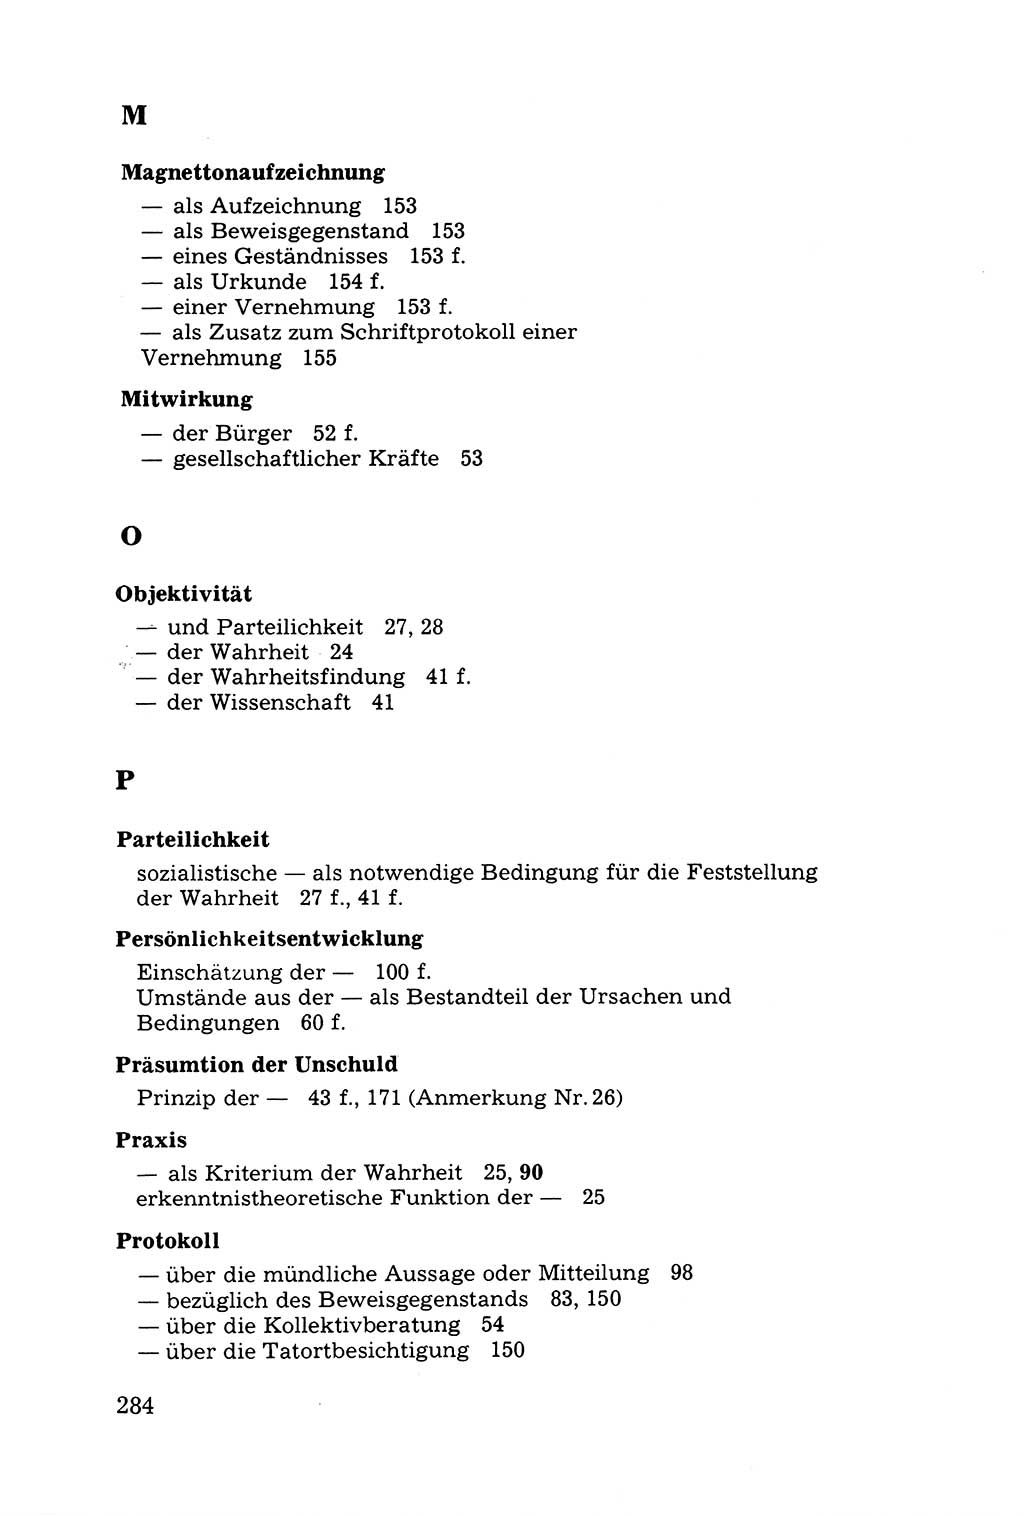 Grundfragen der Beweisführung im Ermittlungsverfahren [Deutsche Demokratische Republik (DDR)] 1980, Seite 284 (Bws.-Fhrg. EV DDR 1980, S. 284)